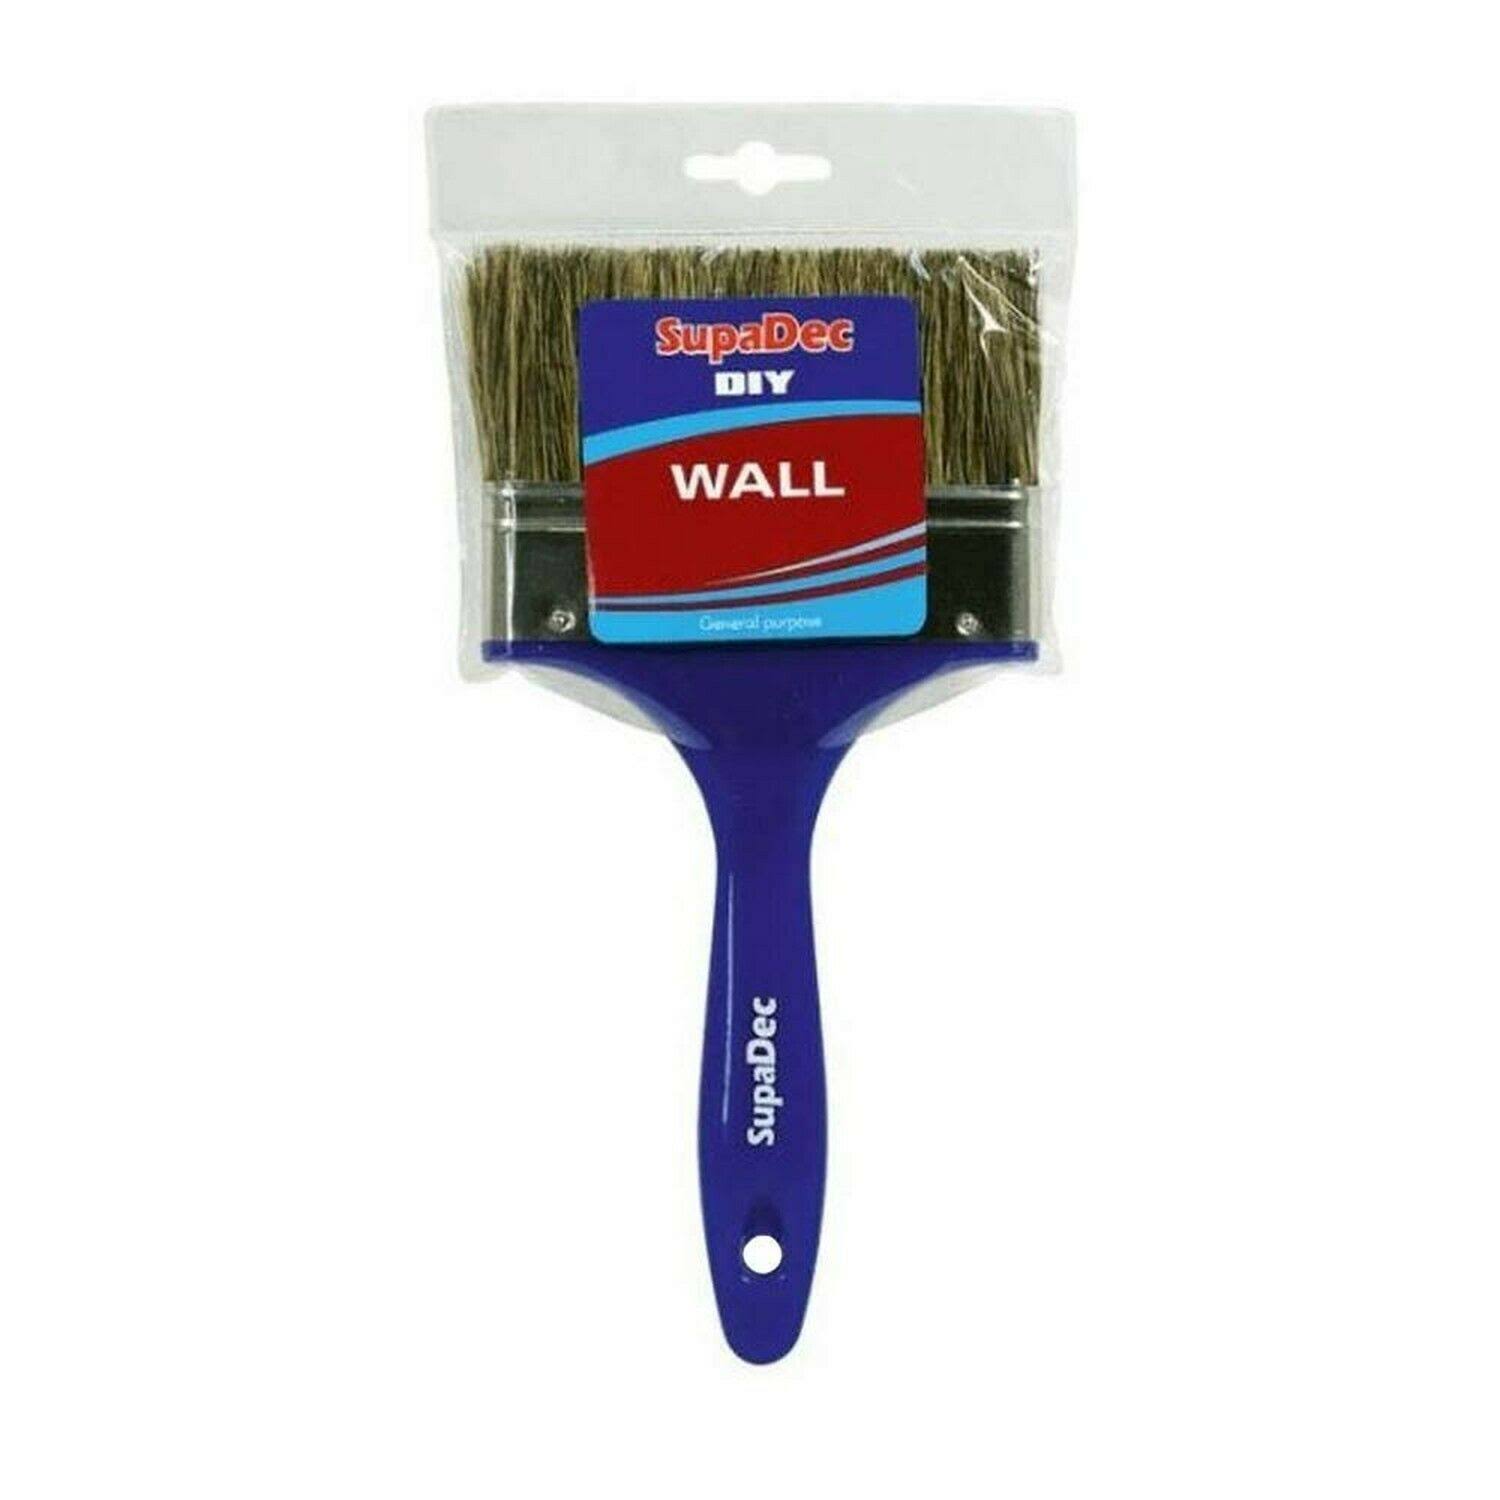 SupaDec DIY Wall Brush - 5inch -125mm